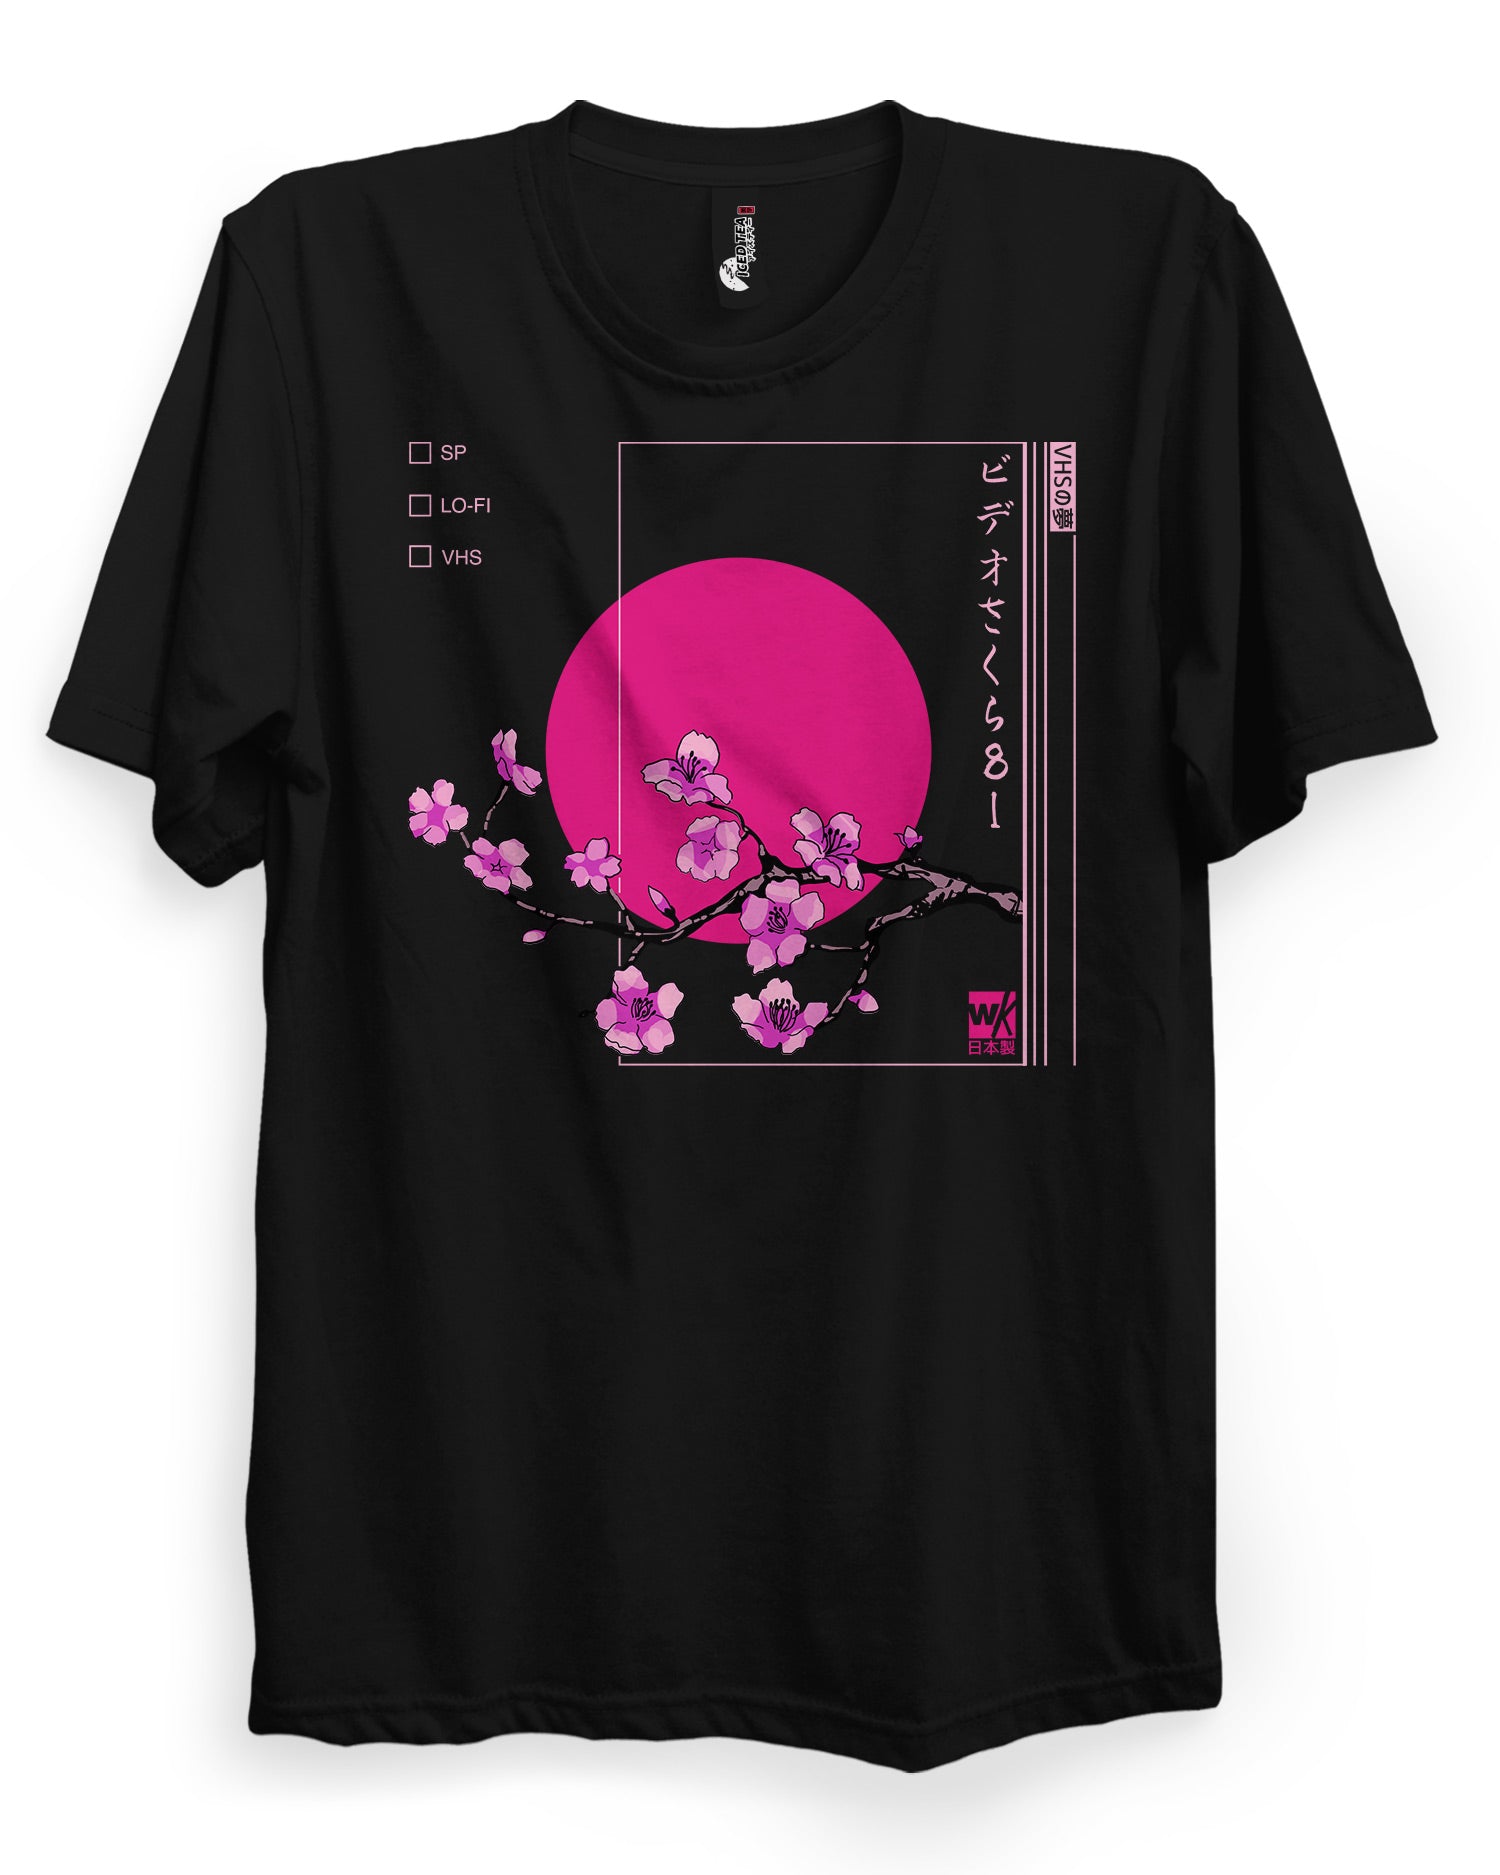 Anime Tshirt Designs  24 Anime Tshirt Ideas in 2023  99designs